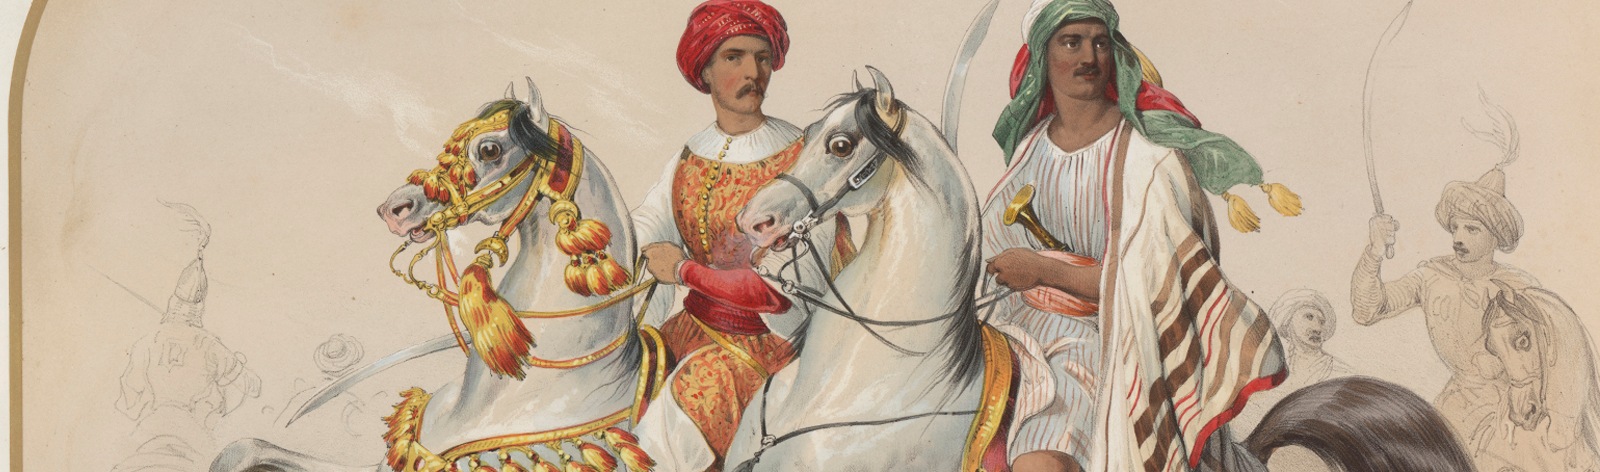 Фоновое изображение Карусель по случаю бракосочетания принца Карла Вюртембергского и великой княжны Ольги Николаевны